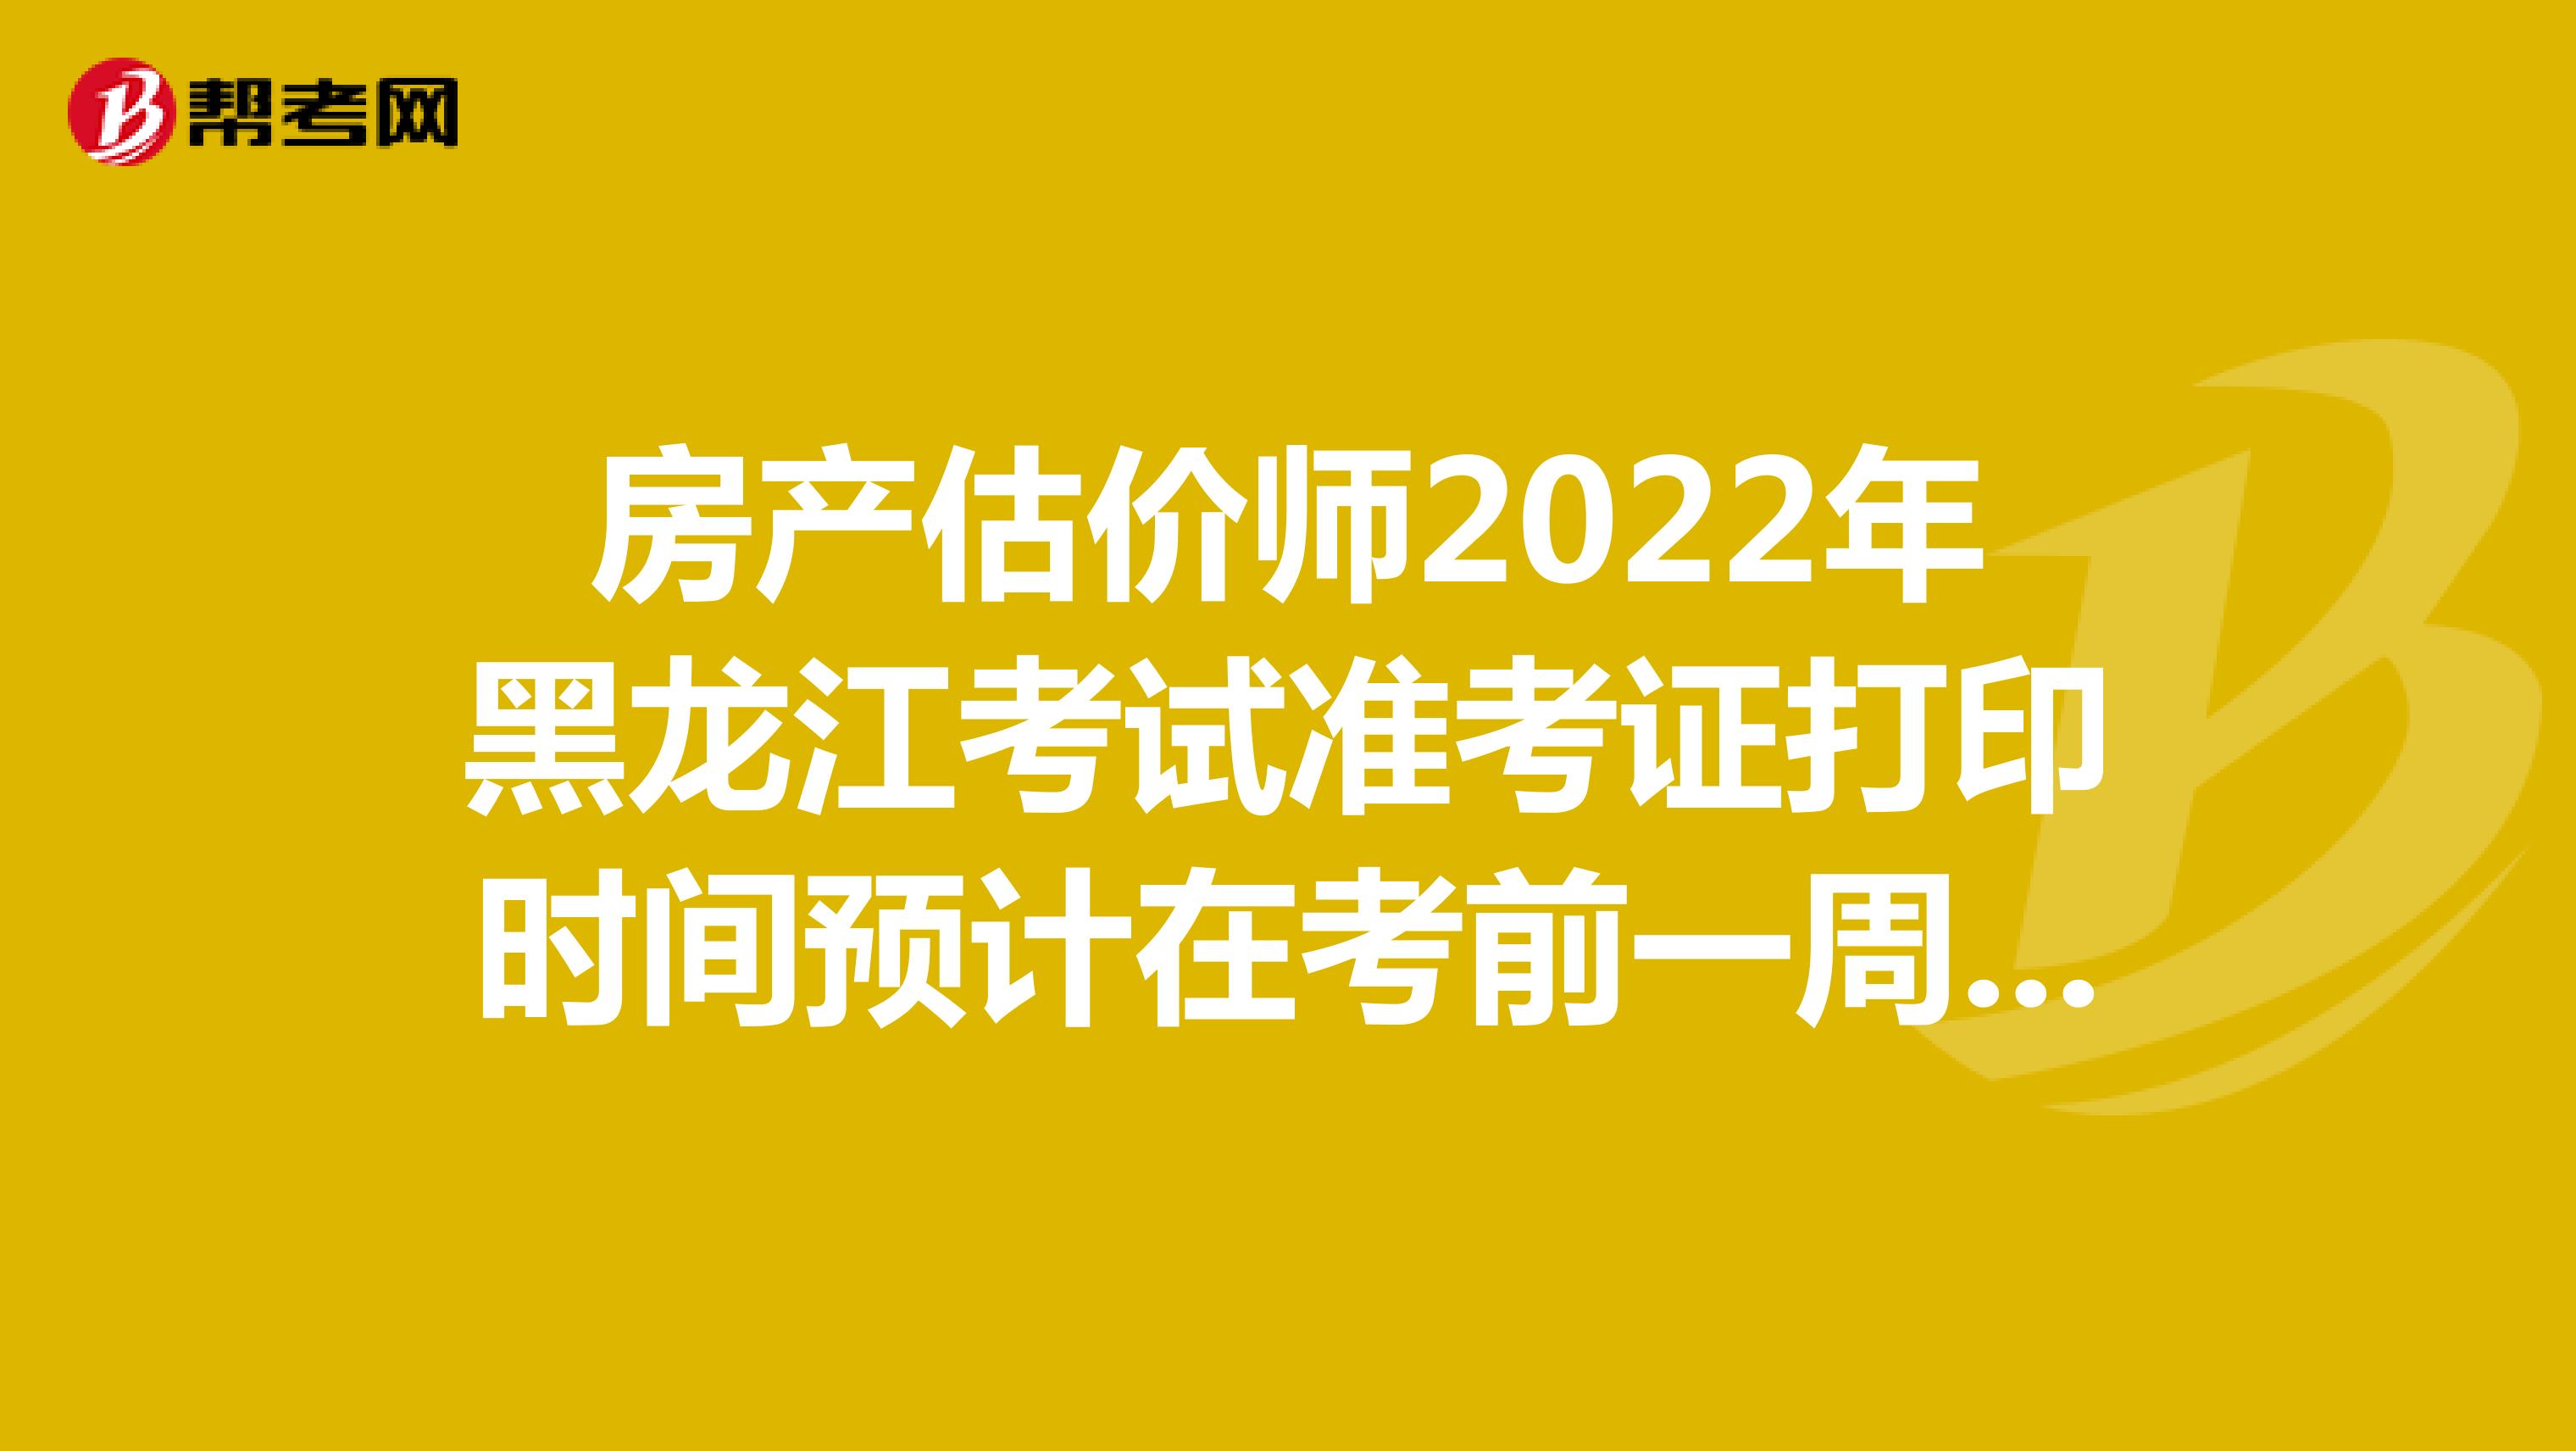 房产估价师2022年黑龙江考试准考证打印时间预计在考前一周左右